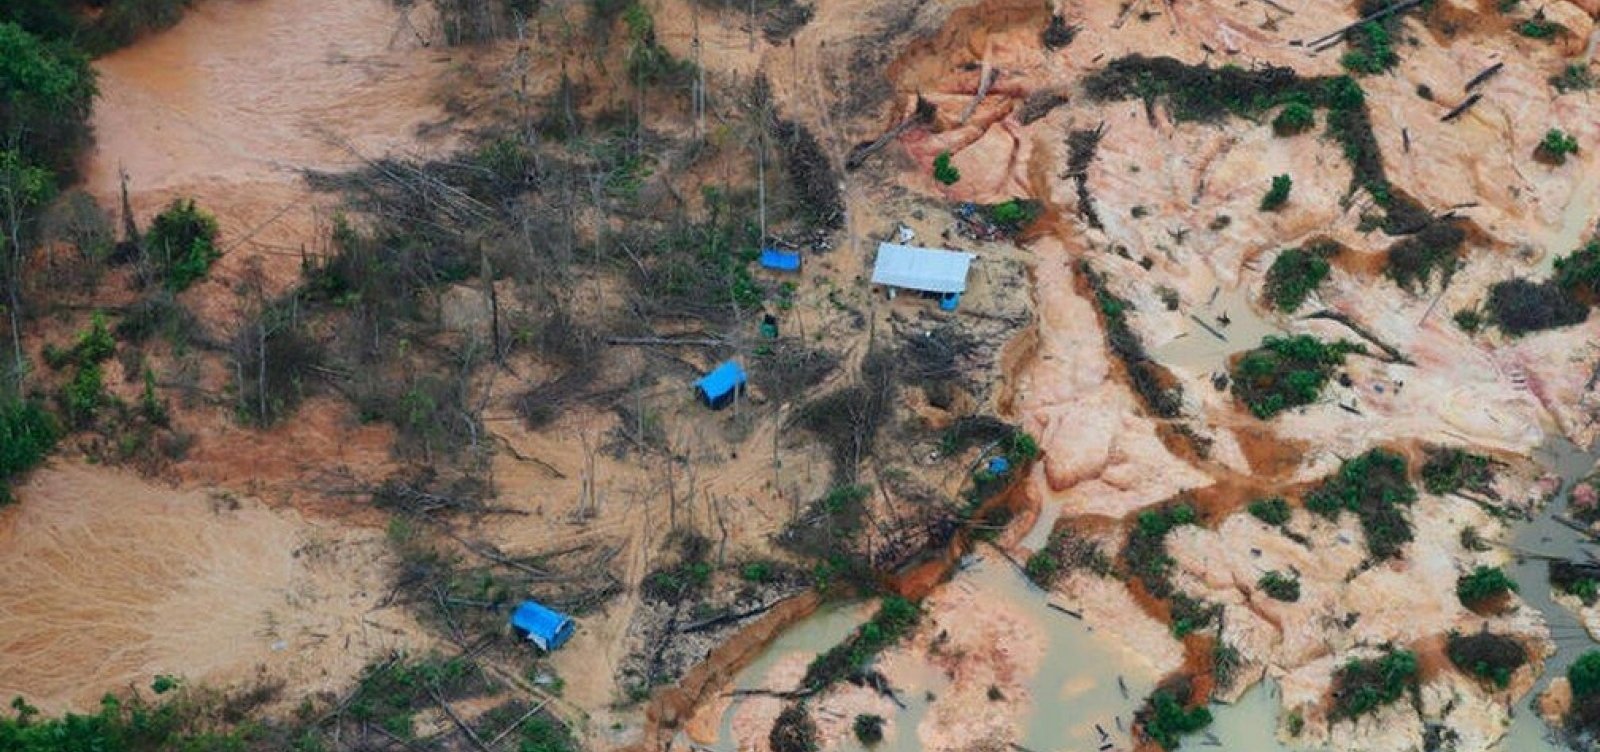 Desmate por mineração na Amazônia bate recordes e avança sobre áreas de conservação